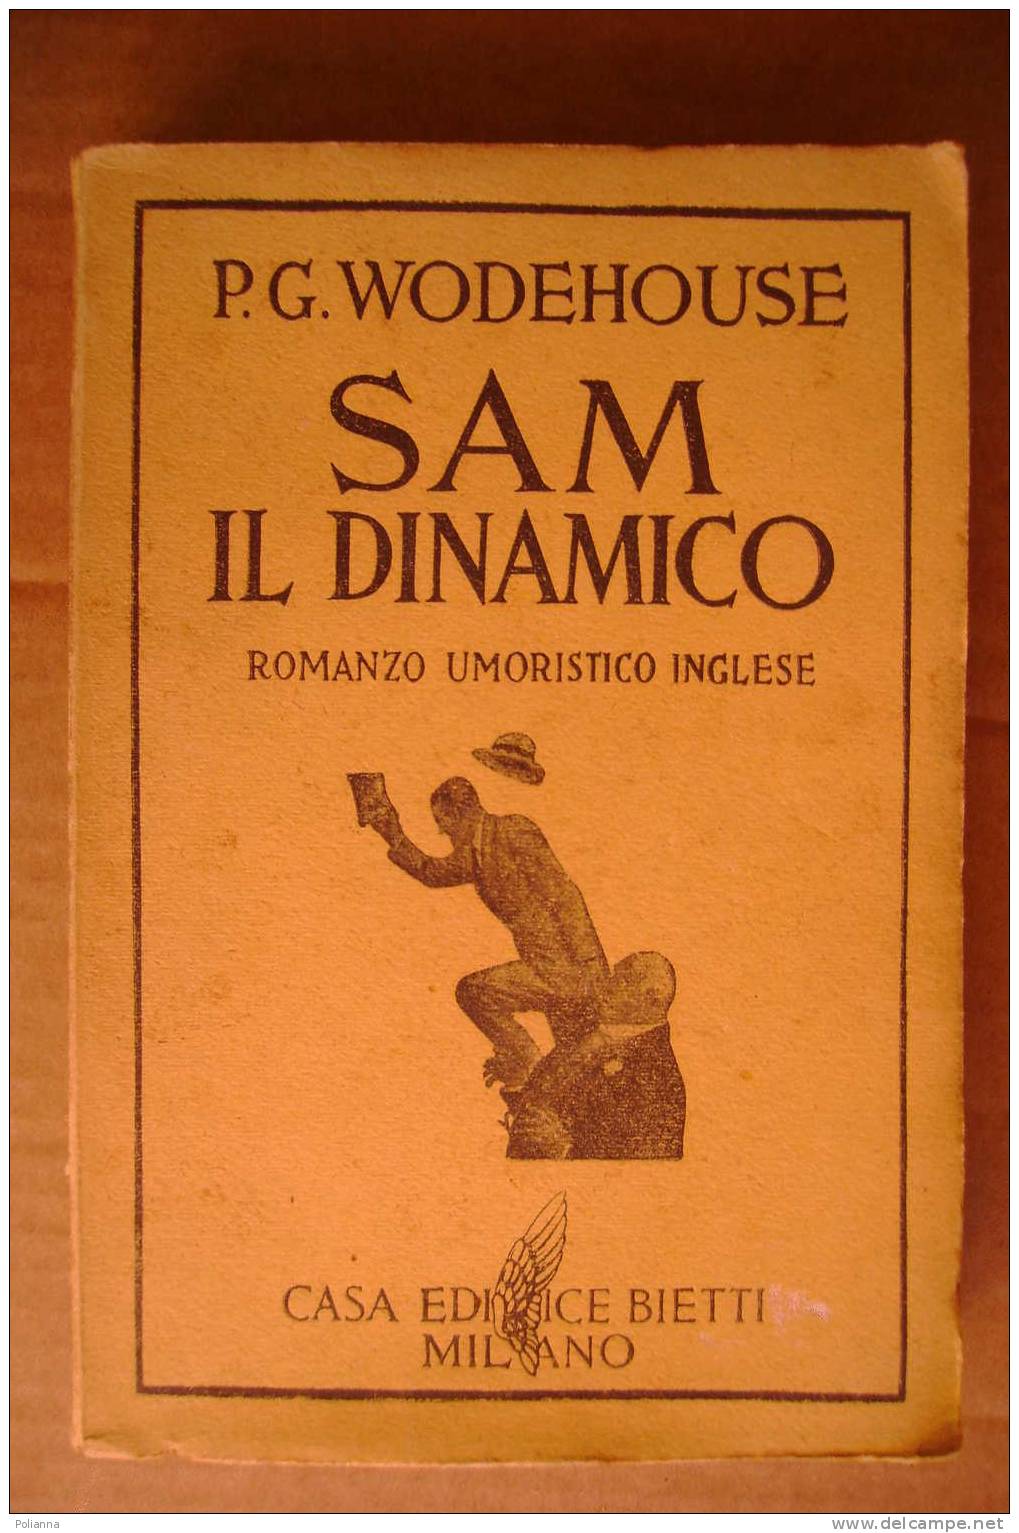 PDK/35  Wodehouse SAM IL DINAMICO Casa Editrice Bietti 1936/romanzo Umoristico Inglese - Old